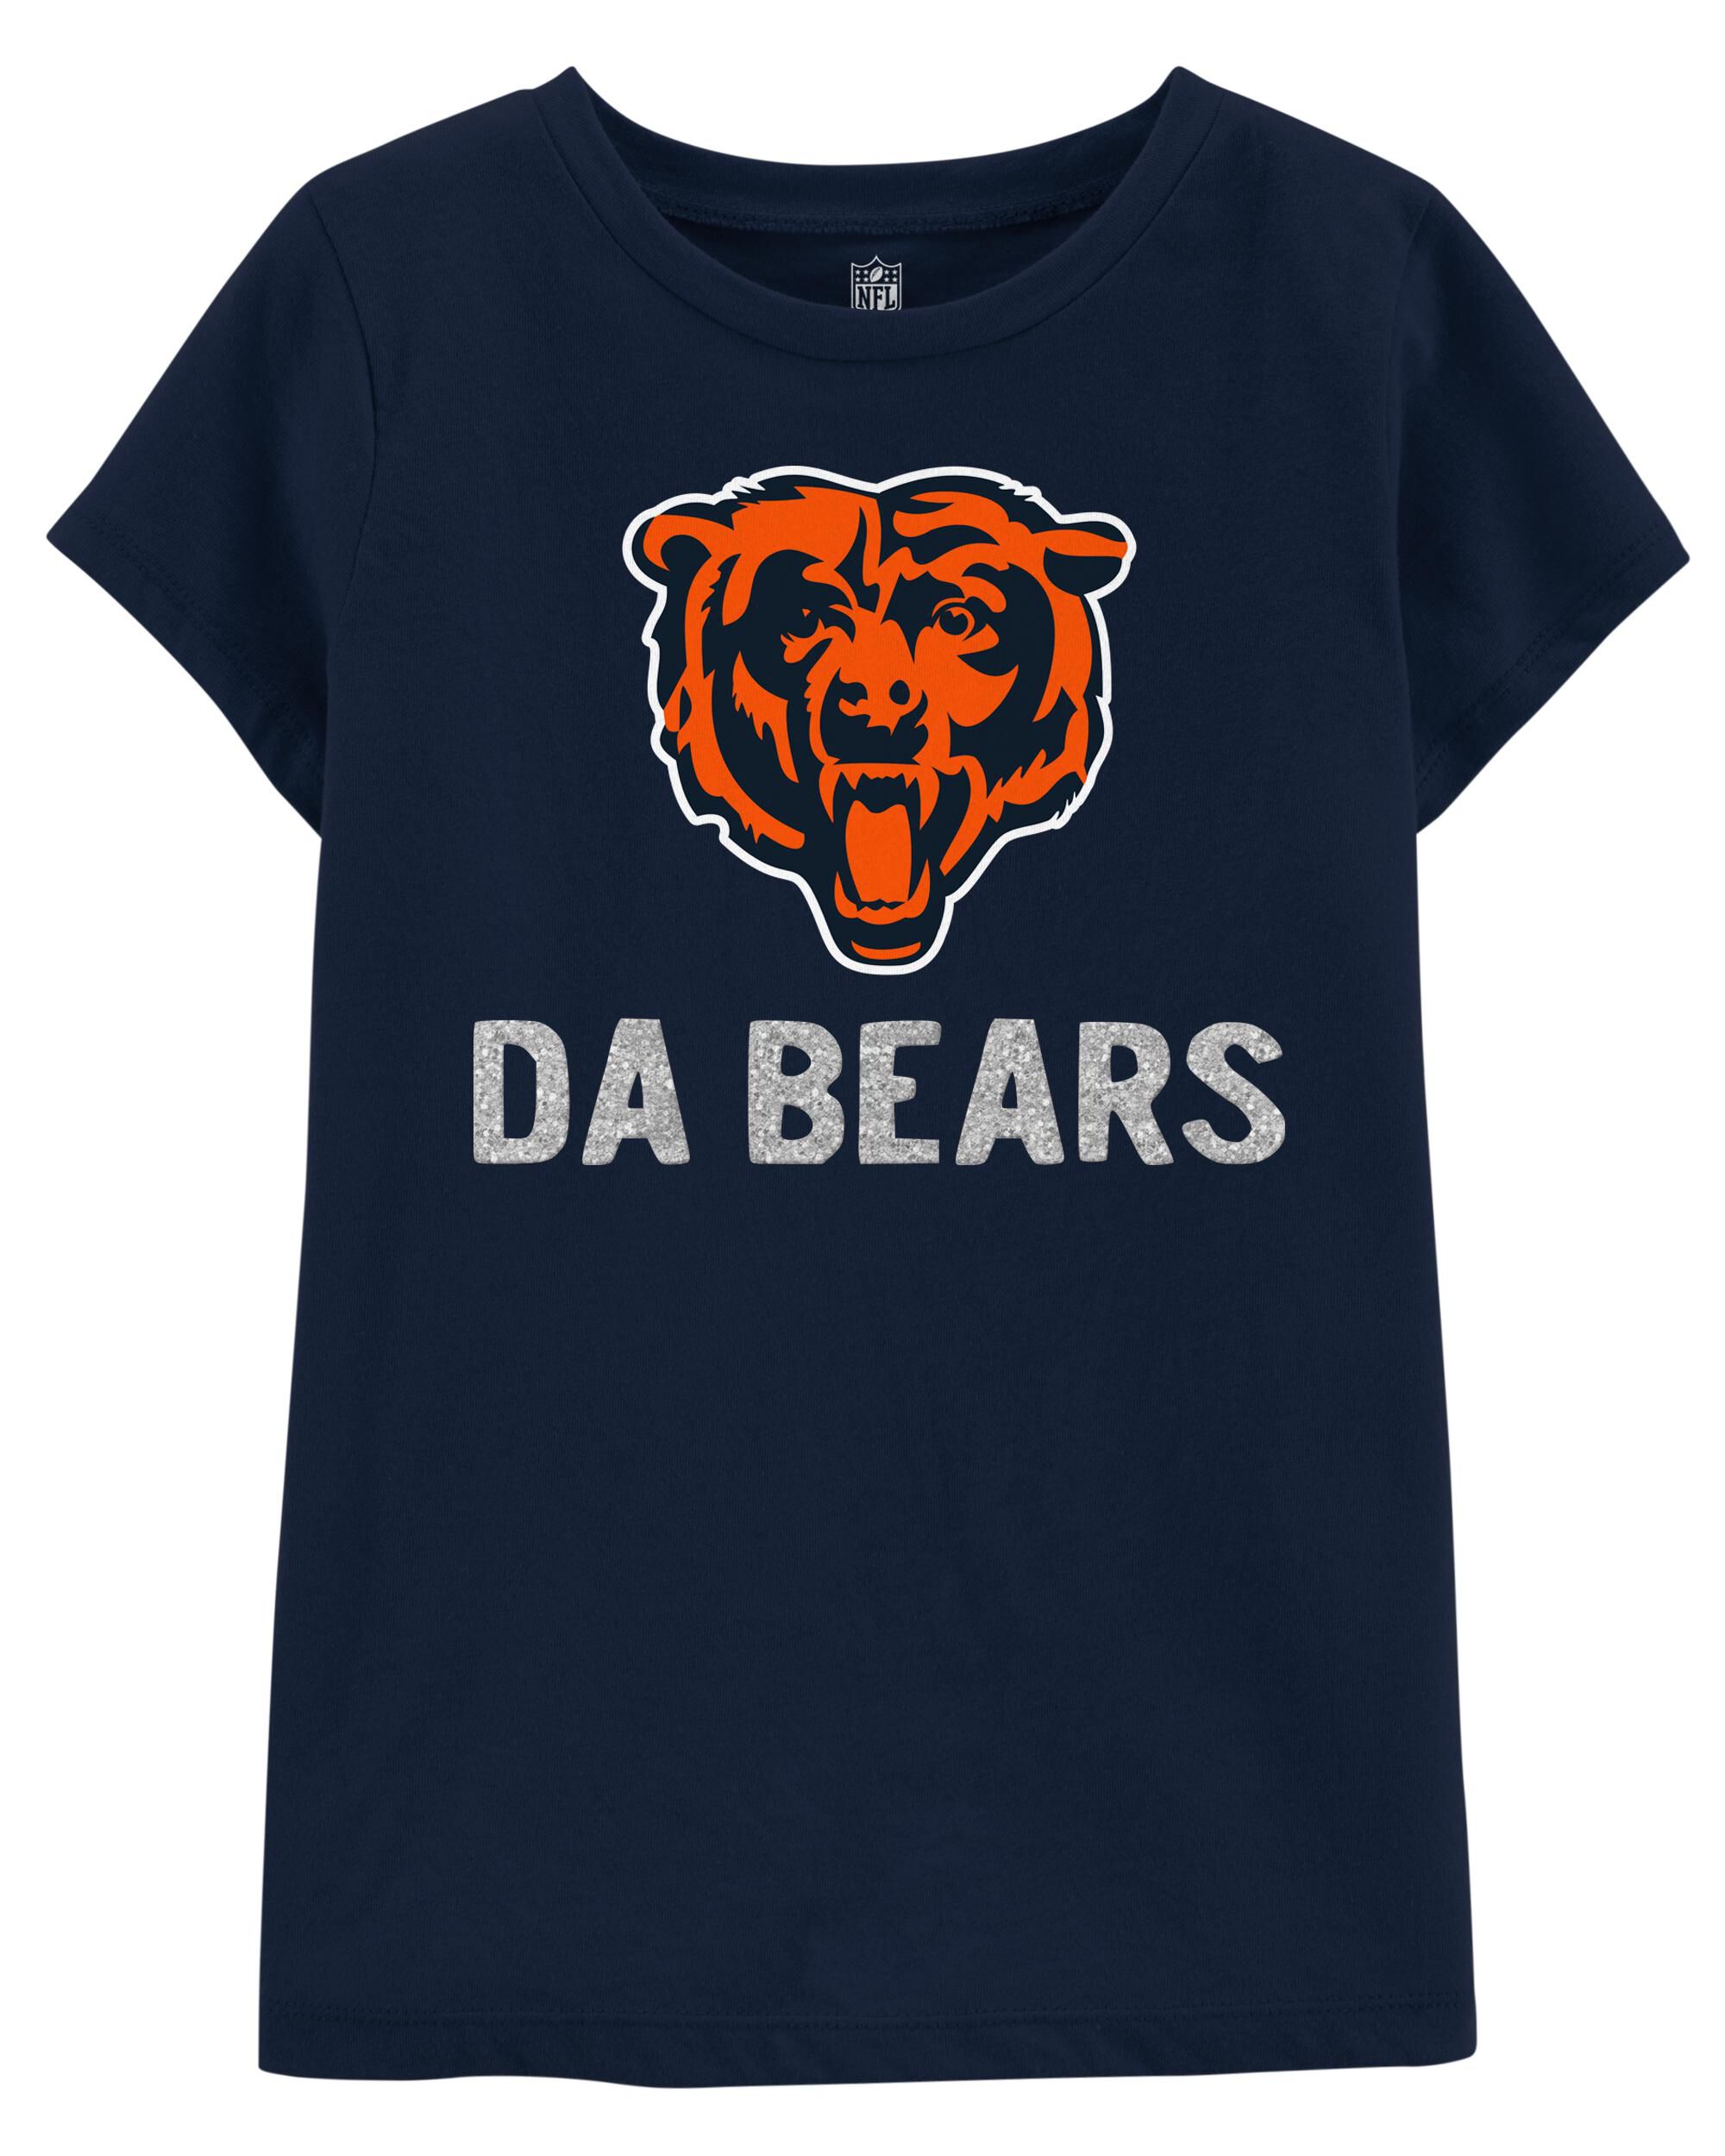 nfl bears shirts